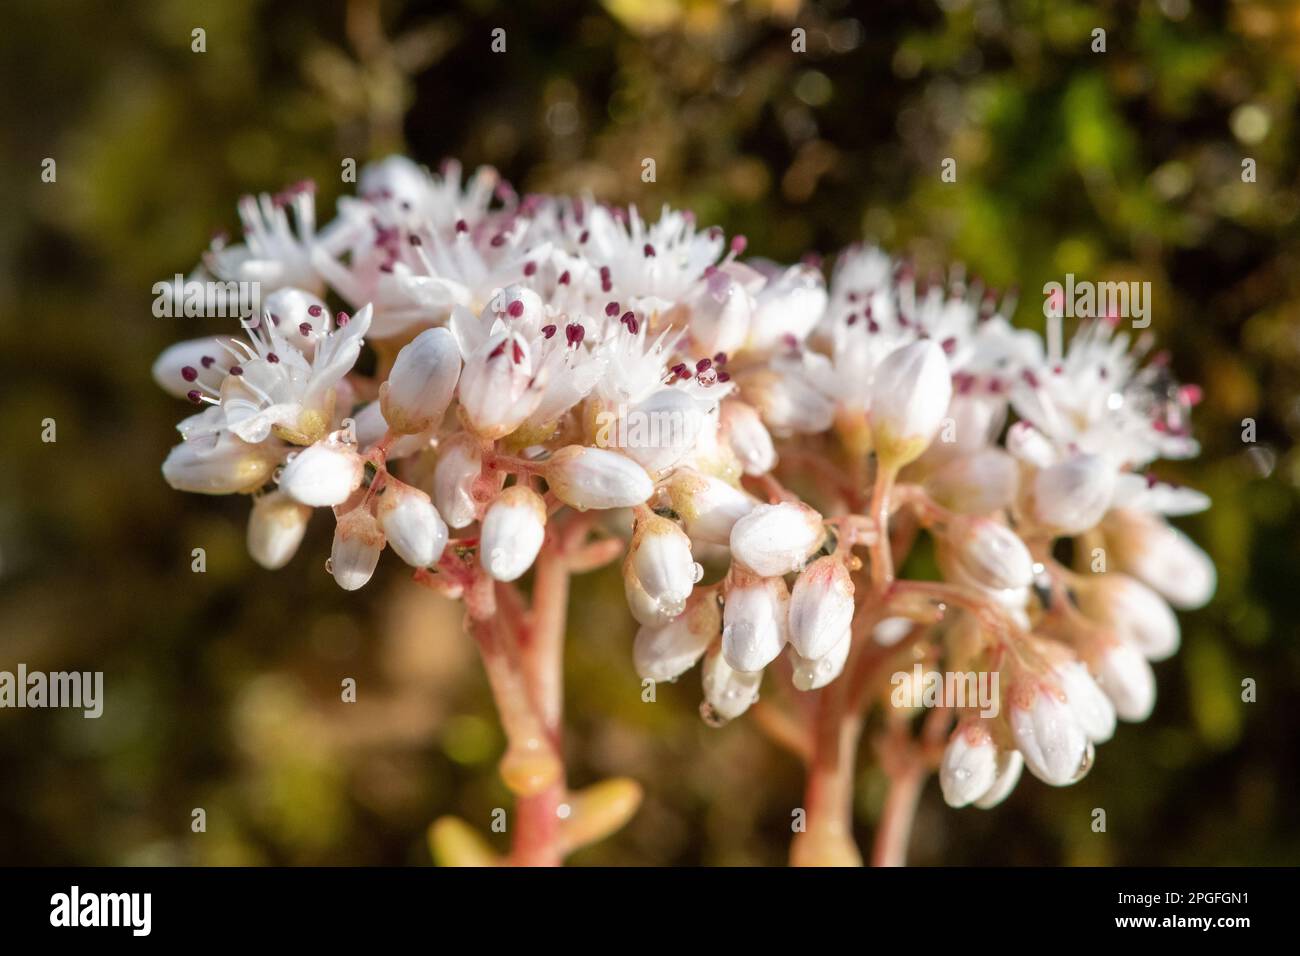 Close up of white stonecrop (sedum album) flowers in bloom Stock Photo